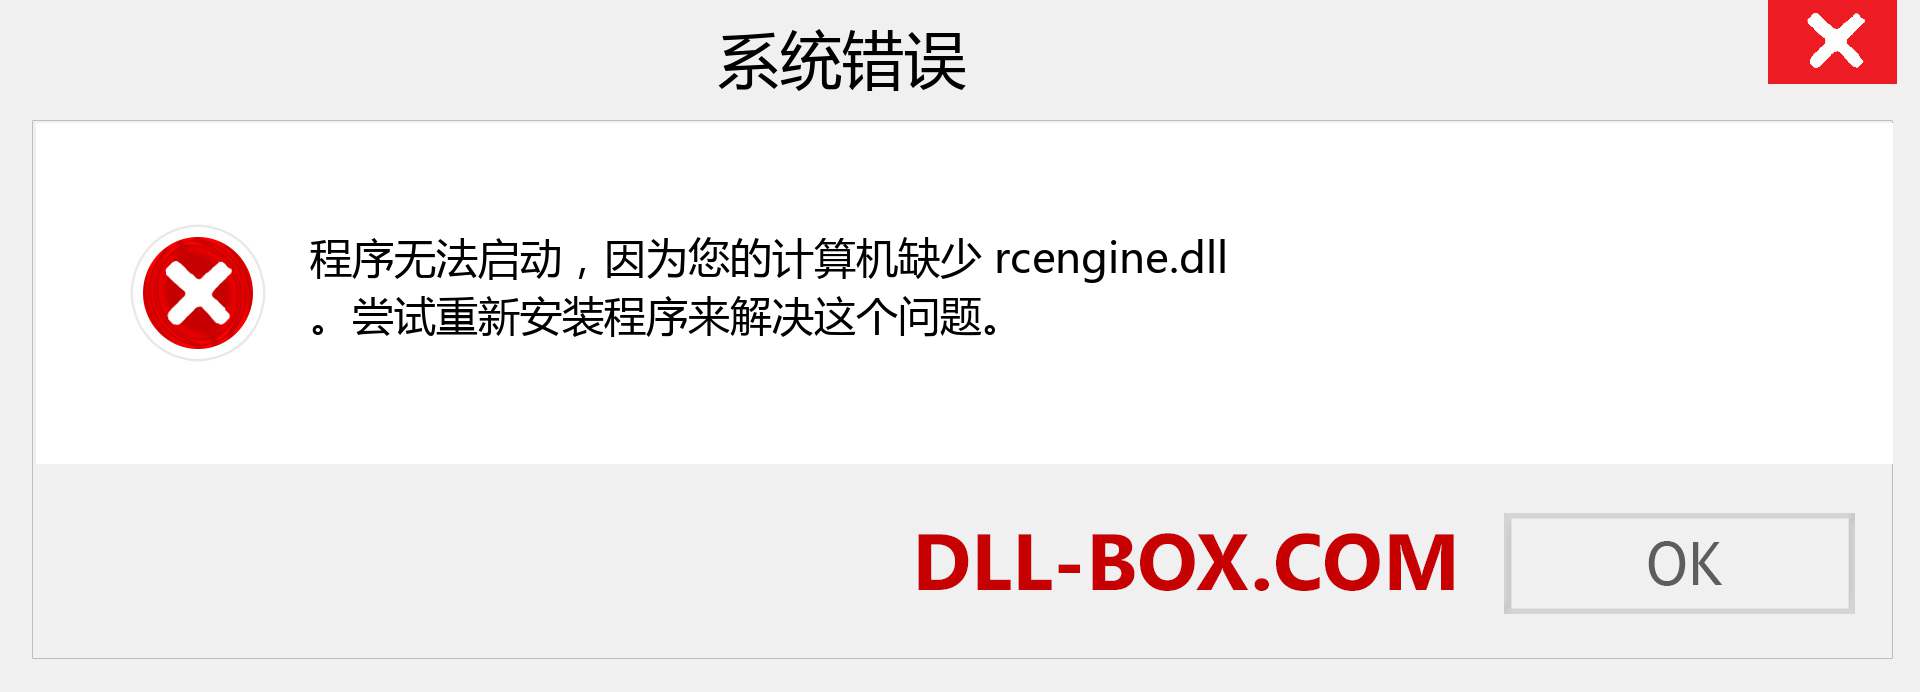 rcengine.dll 文件丢失？。 适用于 Windows 7、8、10 的下载 - 修复 Windows、照片、图像上的 rcengine dll 丢失错误